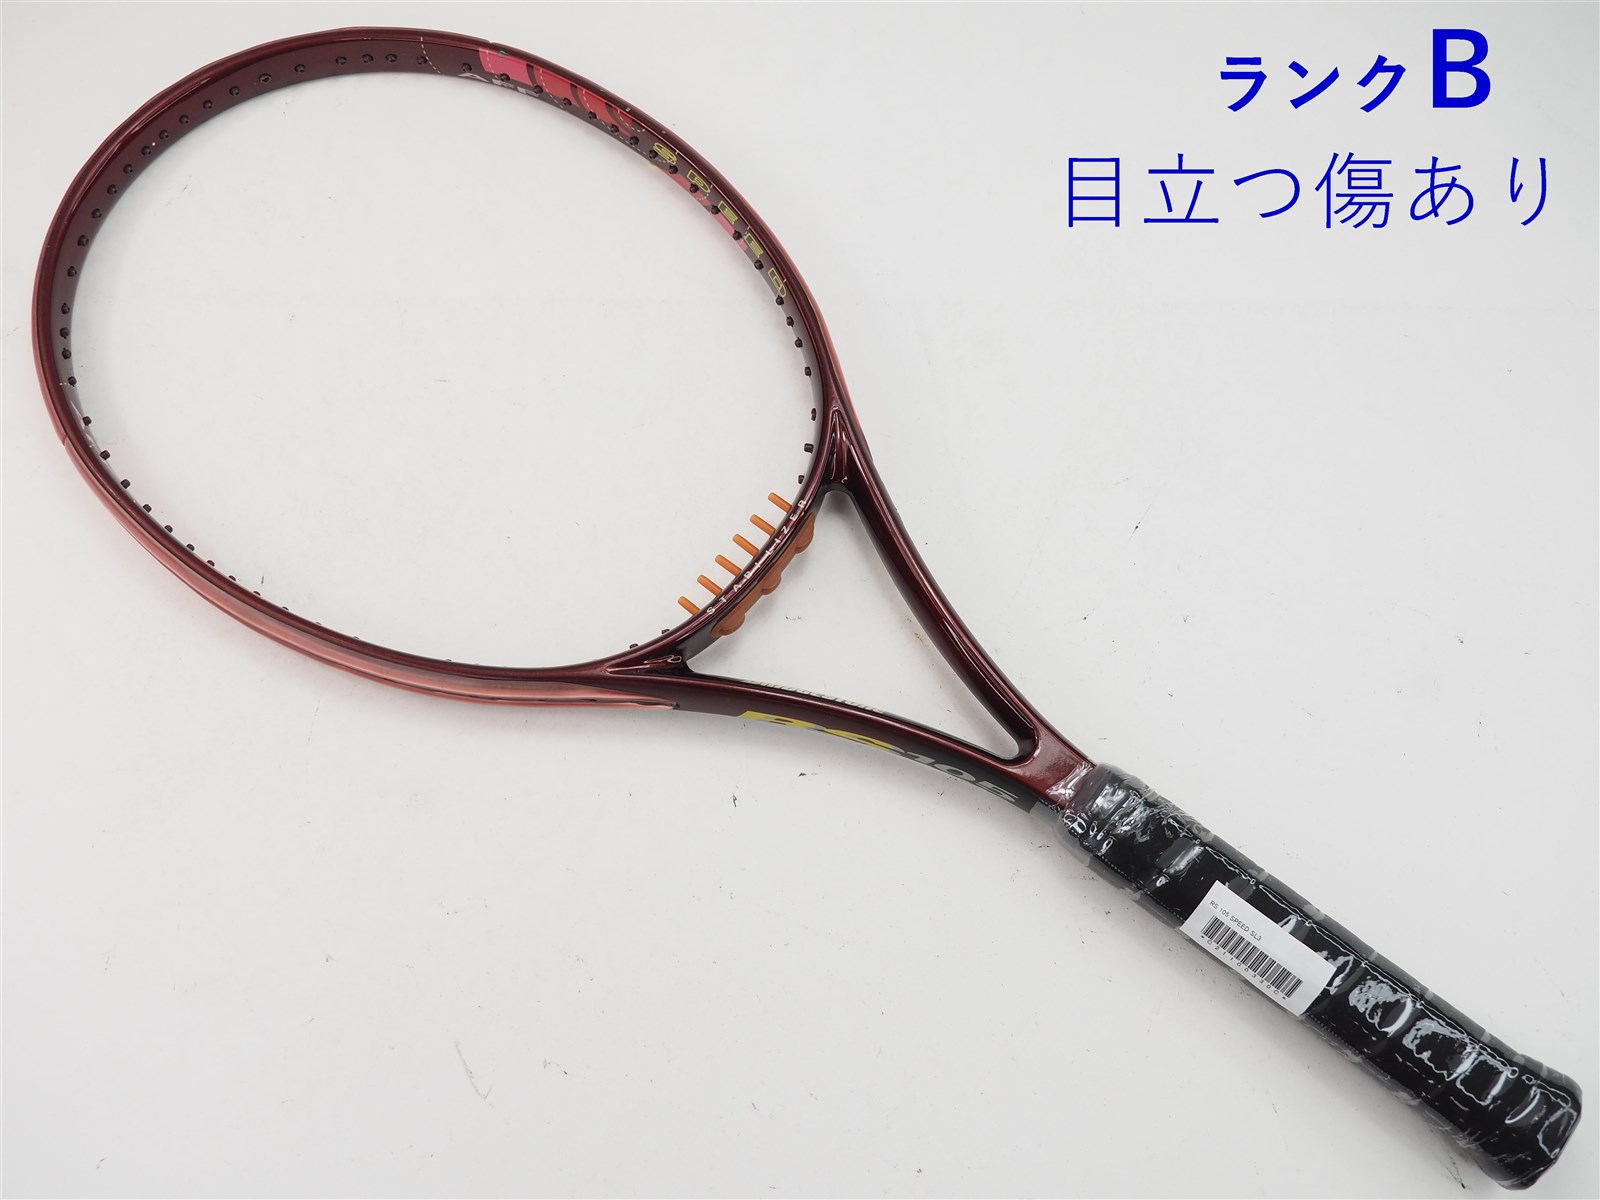 【中古】ブリヂストン アールエス 105 スピードBRIDGESTONE RS 105 SPEED(SL3)【中古 テニスラケット】